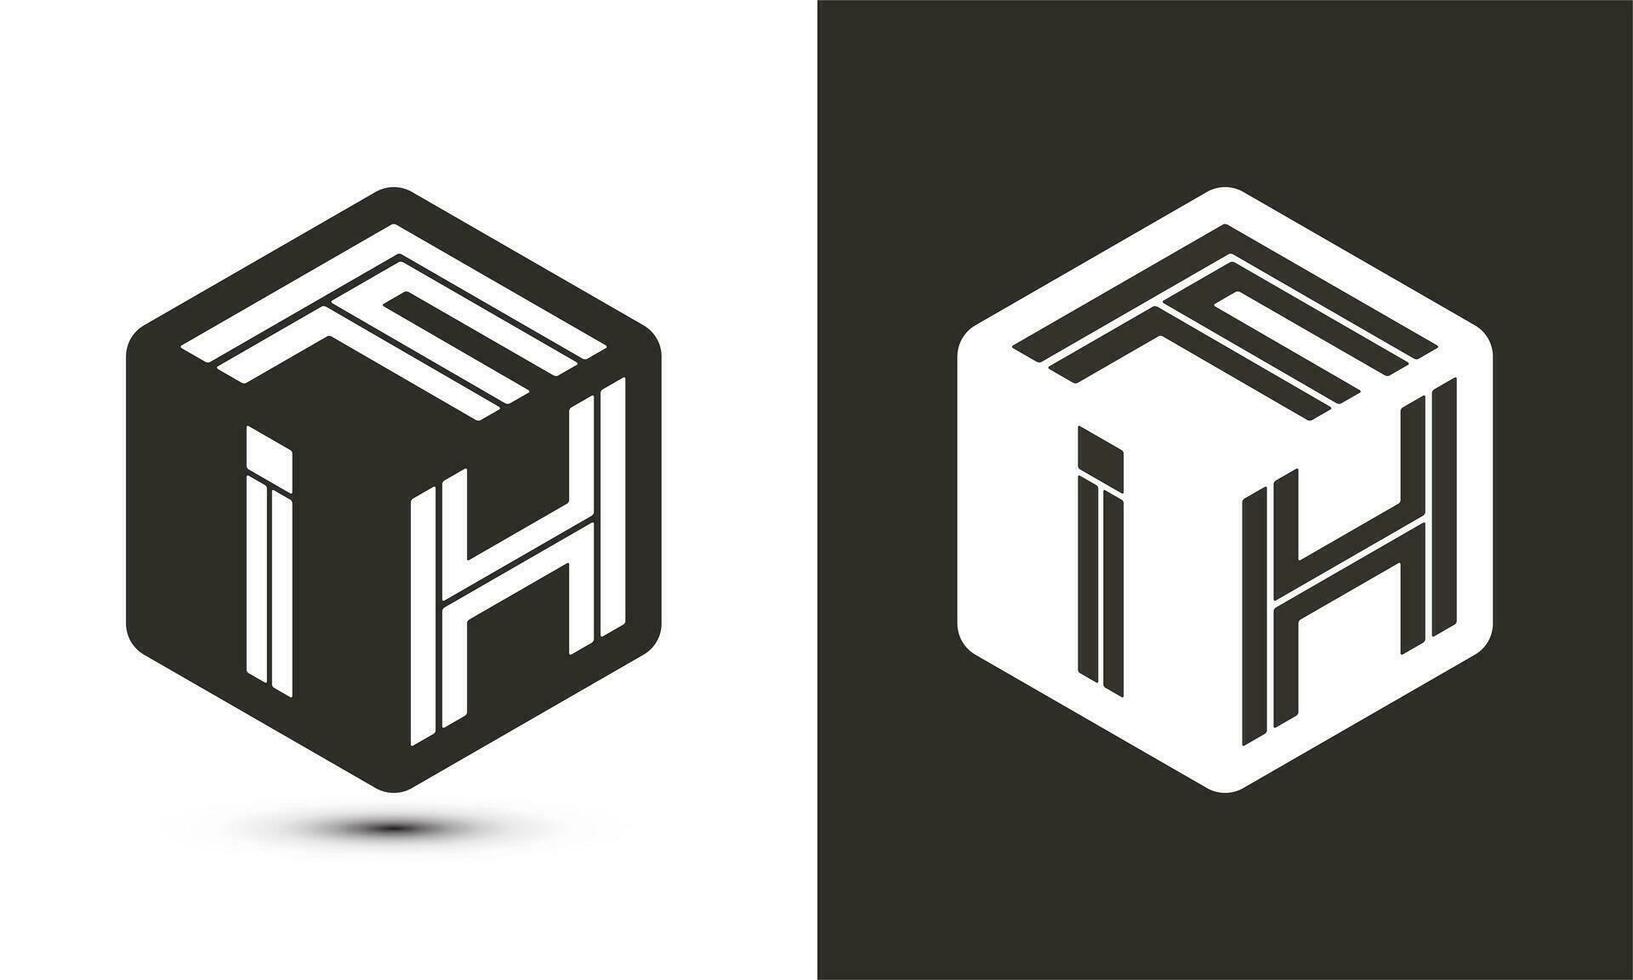 fih brief logo ontwerp met illustrator kubus logo, vector logo modern alfabet doopvont overlappen stijl.